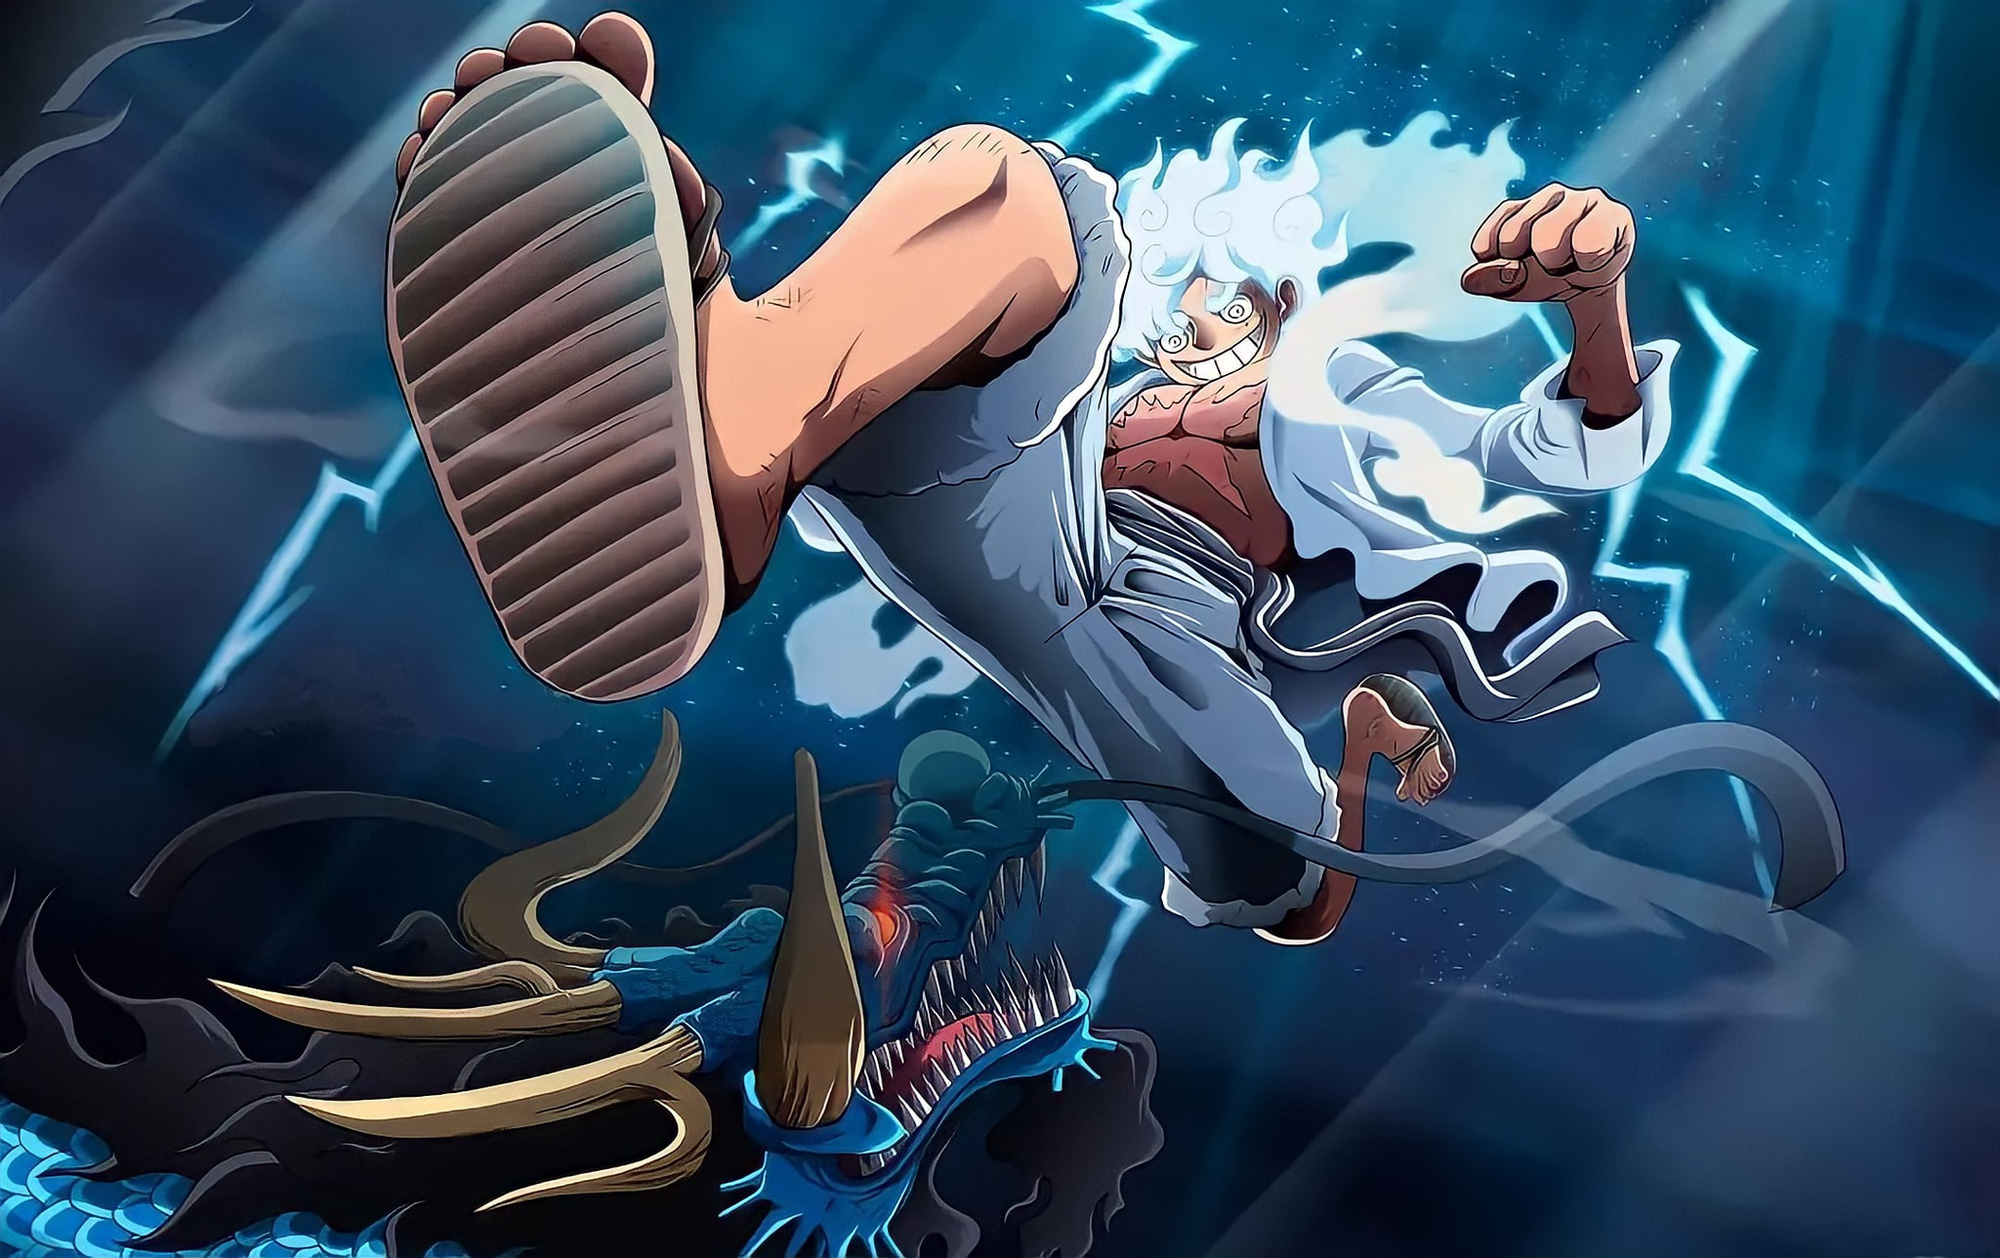 Bạn đã từng nghe về God Luffy chưa? Đây là một hình ảnh đầy kích thích của chiến binh mạnh mẽ này khi sử dụng tối đa sức mạnh của thần thánh! Nếu bạn muốn trải nghiệm cảm giác tự do và mạnh mẽ trong One Piece, hãy xem hình ảnh này ngay bây giờ!